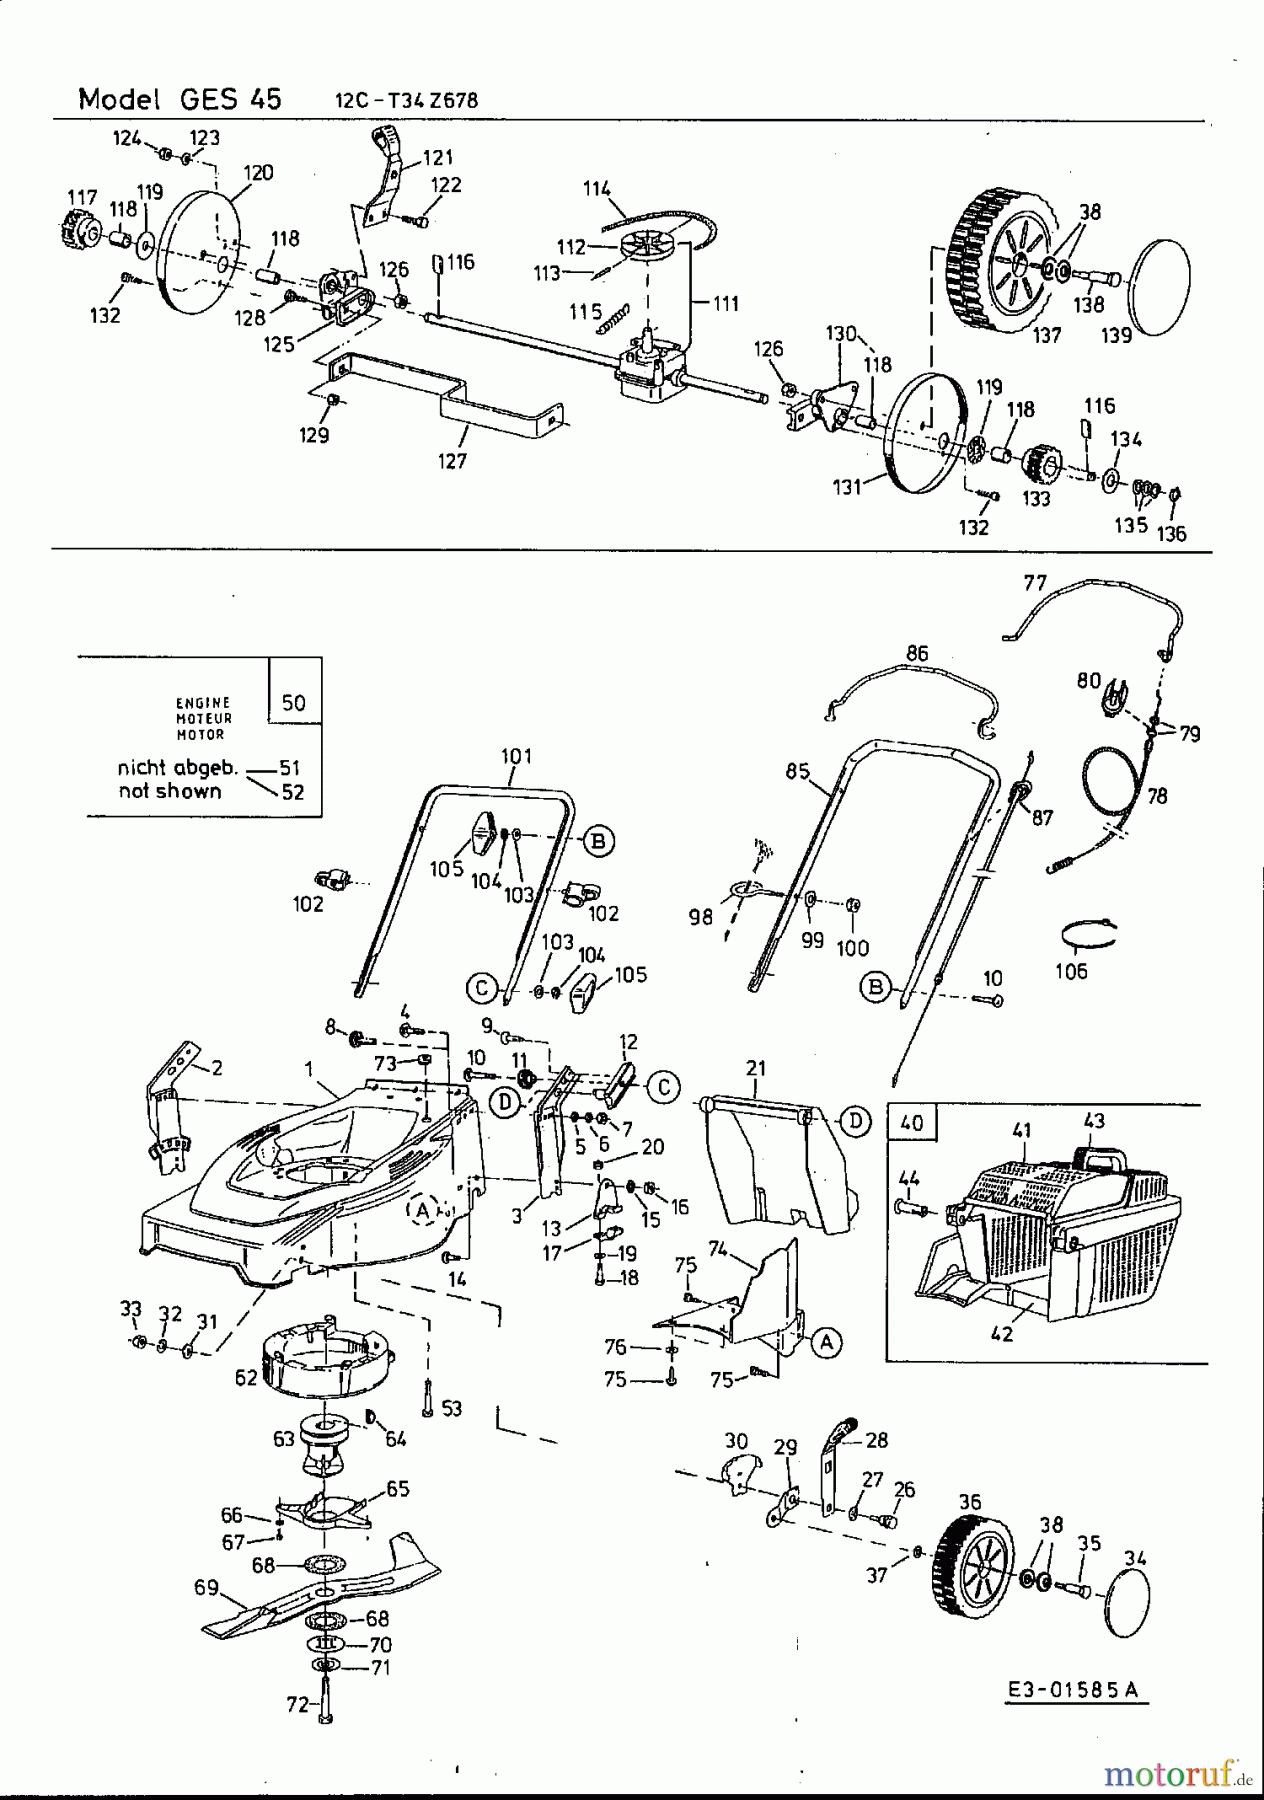  MTD Motormäher mit Antrieb GES 45 12C-T34Z678  (2001) Grundgerät